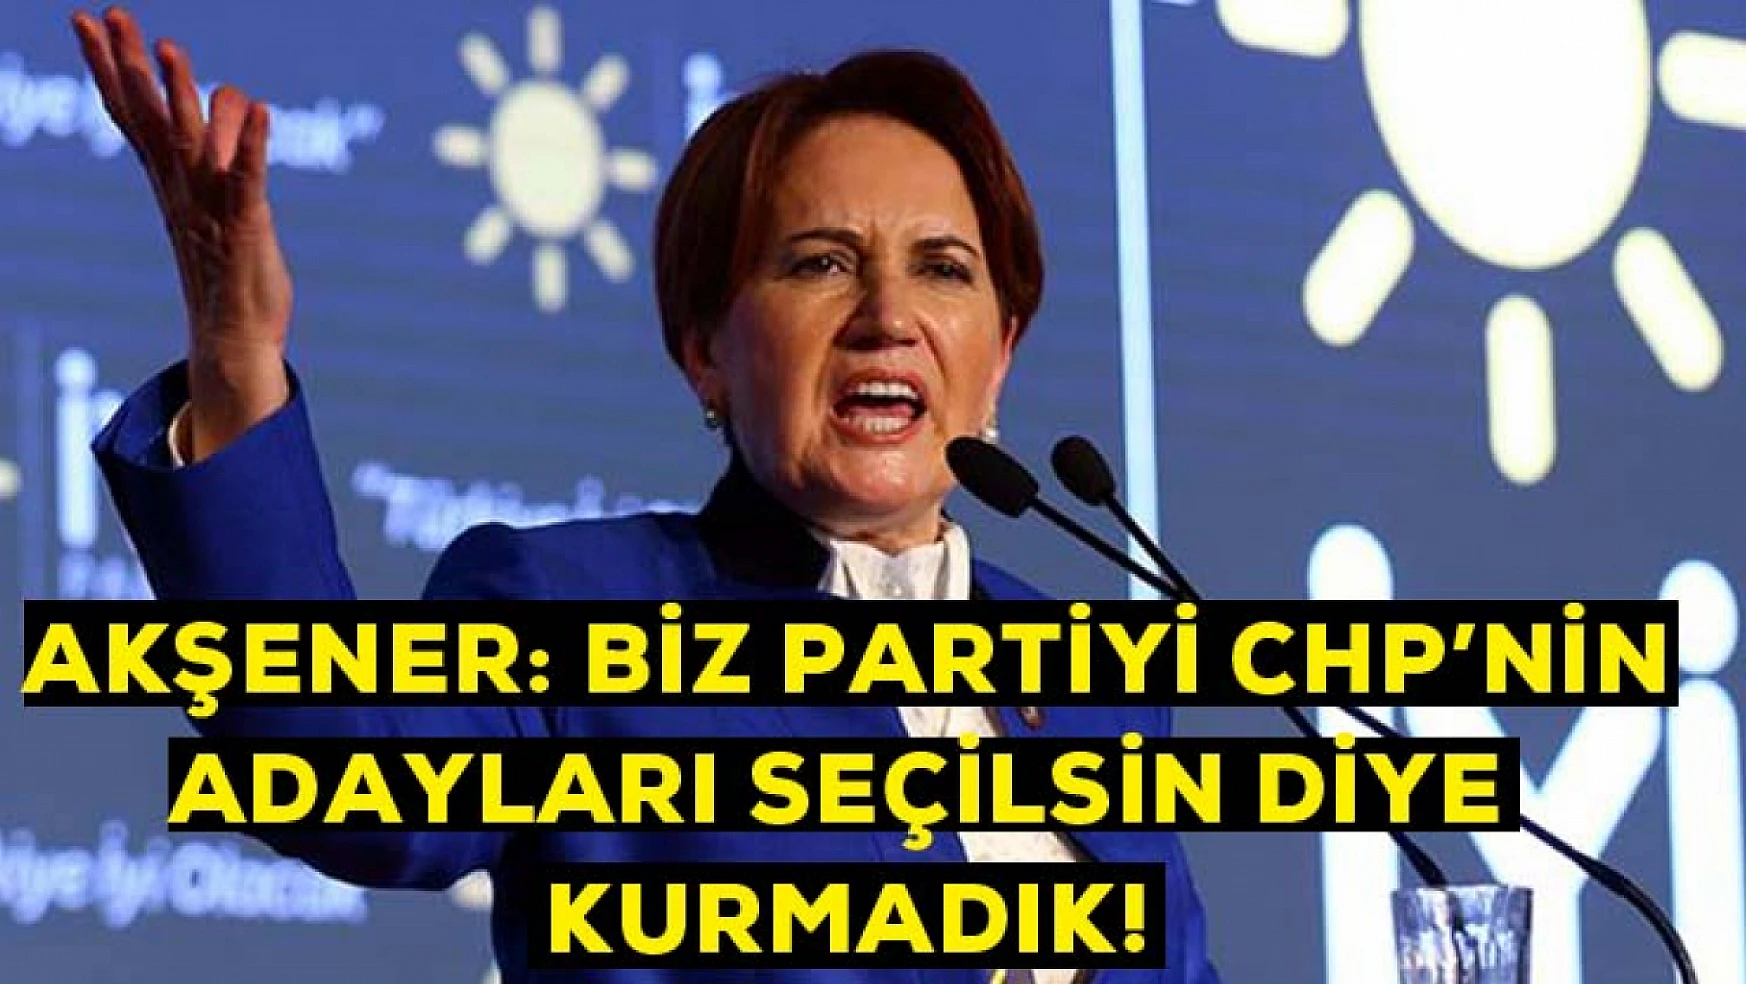 Akşener: Biz partiyi CHP'nin adayları seçilsin diye kurmadık